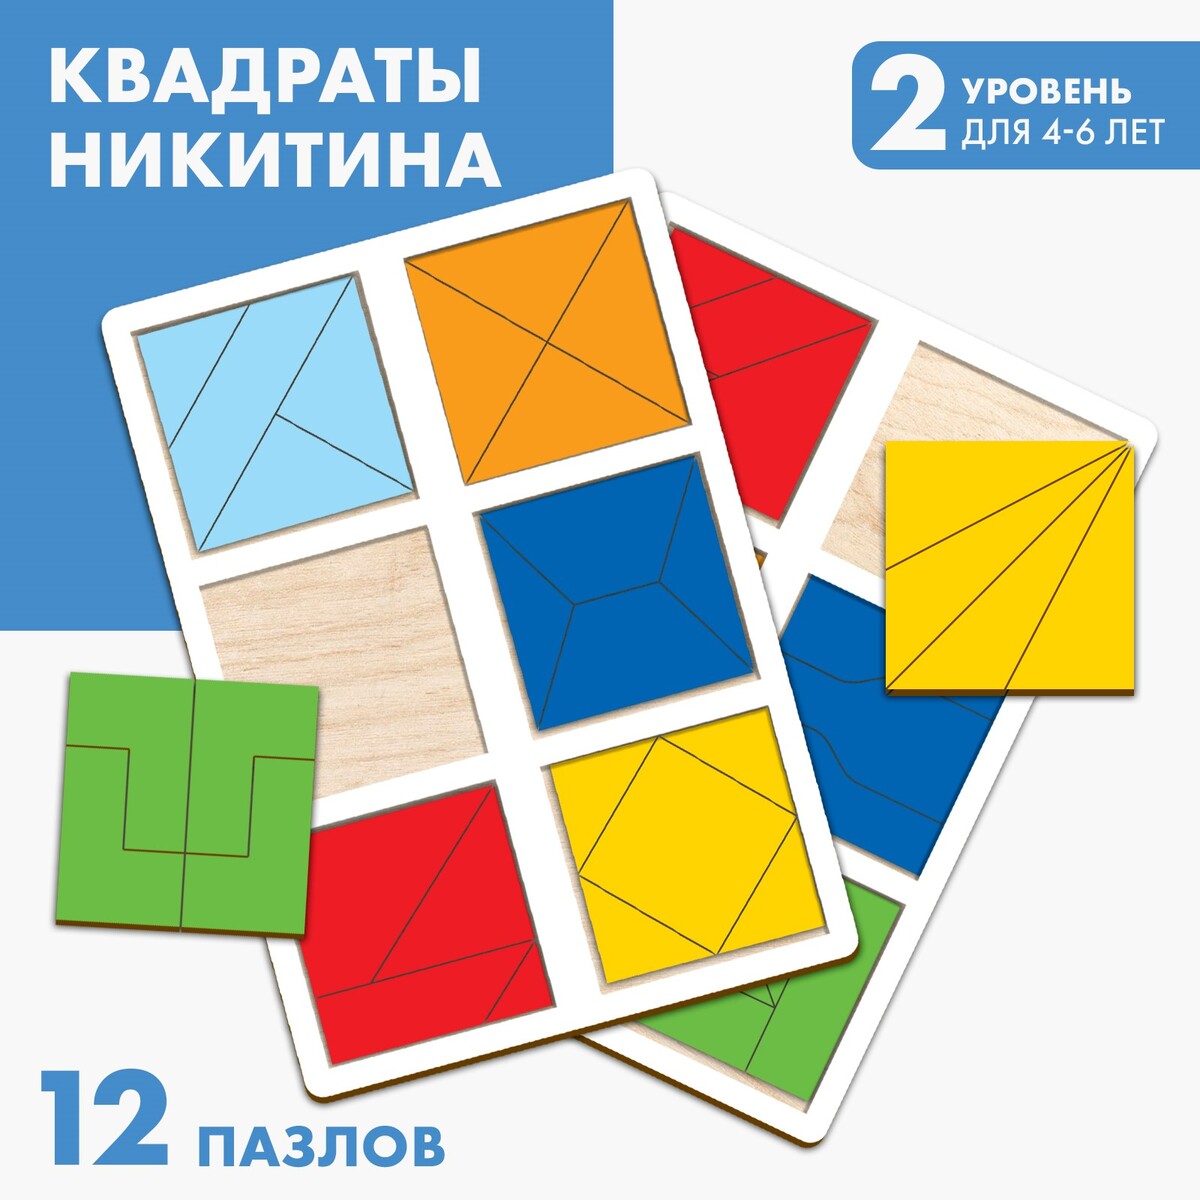 Квадраты 2 уровень (2 шт.), 12 квадратов квадраты 2 уровень 2 шт 12 квадратов